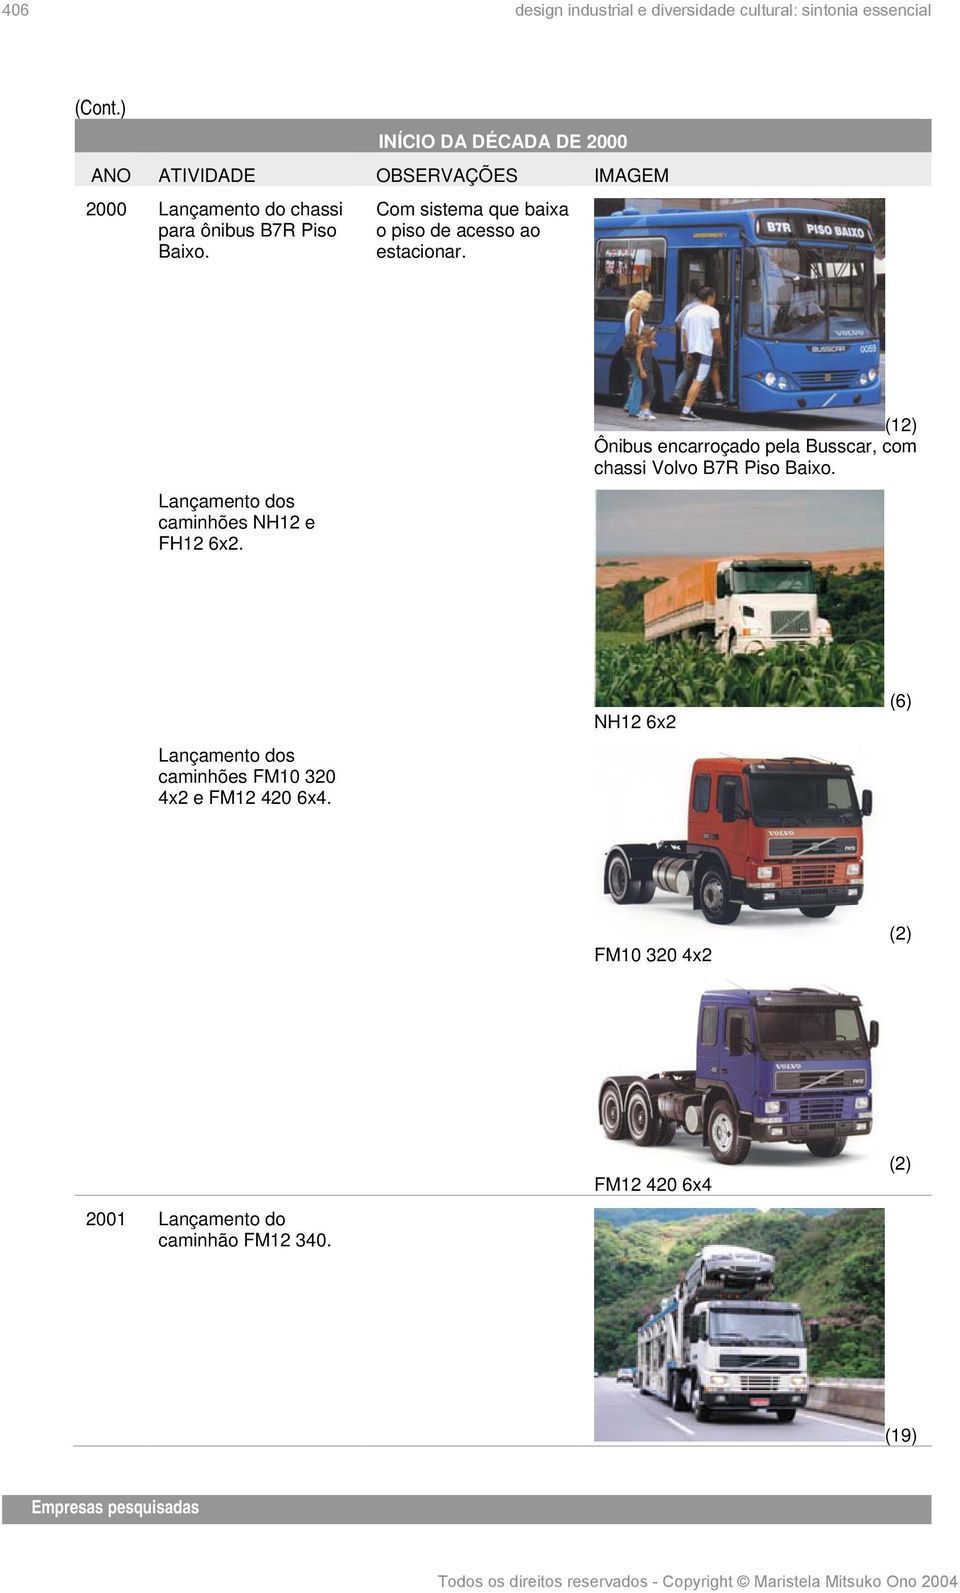 Lançamento dos caminhões NH12 e FH12 6x2. (12) Ônibus encarroçado pela Busscar, com chassi Volvo B7R Piso Baixo.